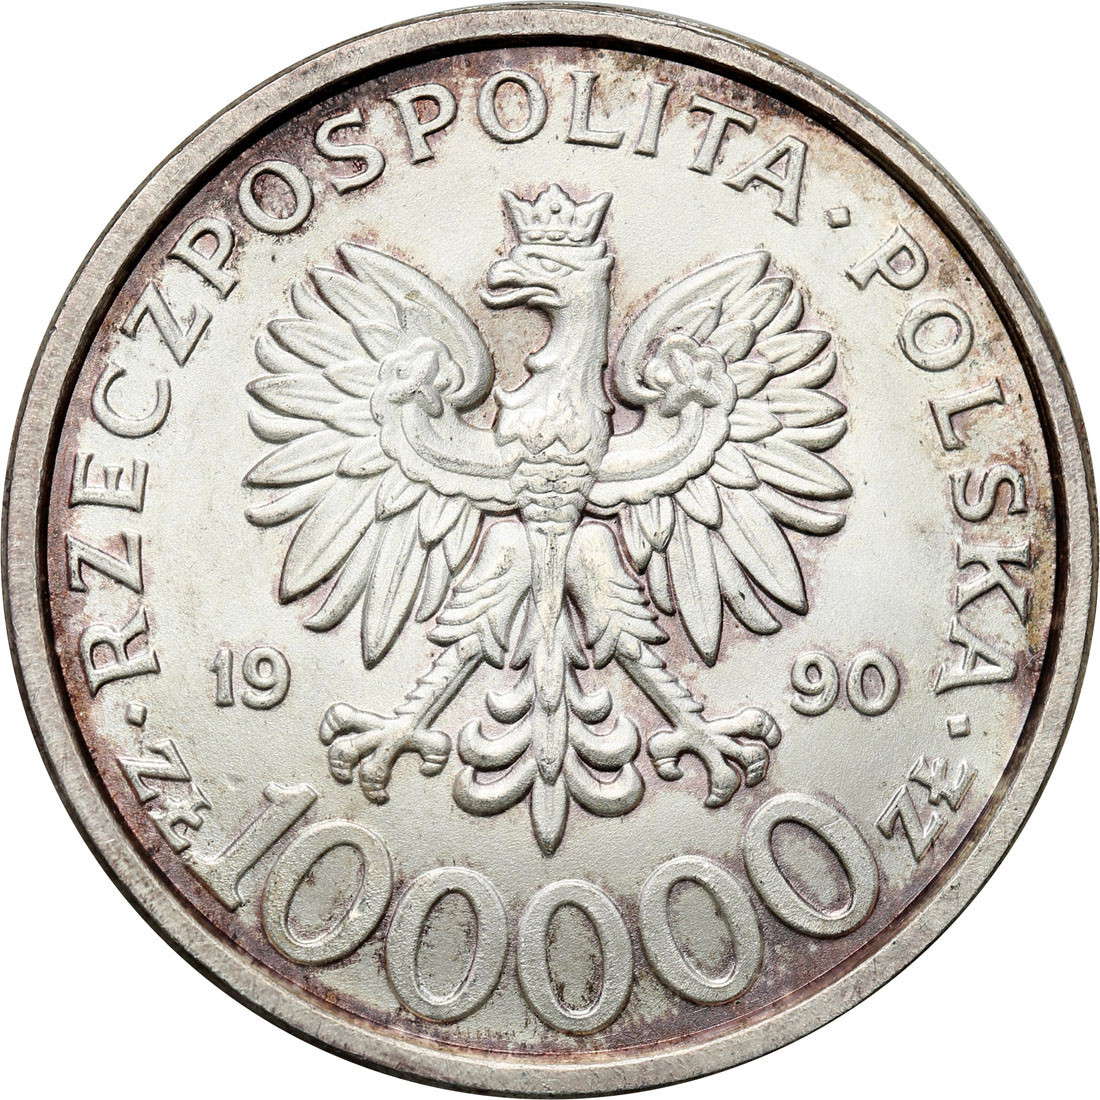 100 000 złotych 1990 Solidarność typ B – Rzadkie